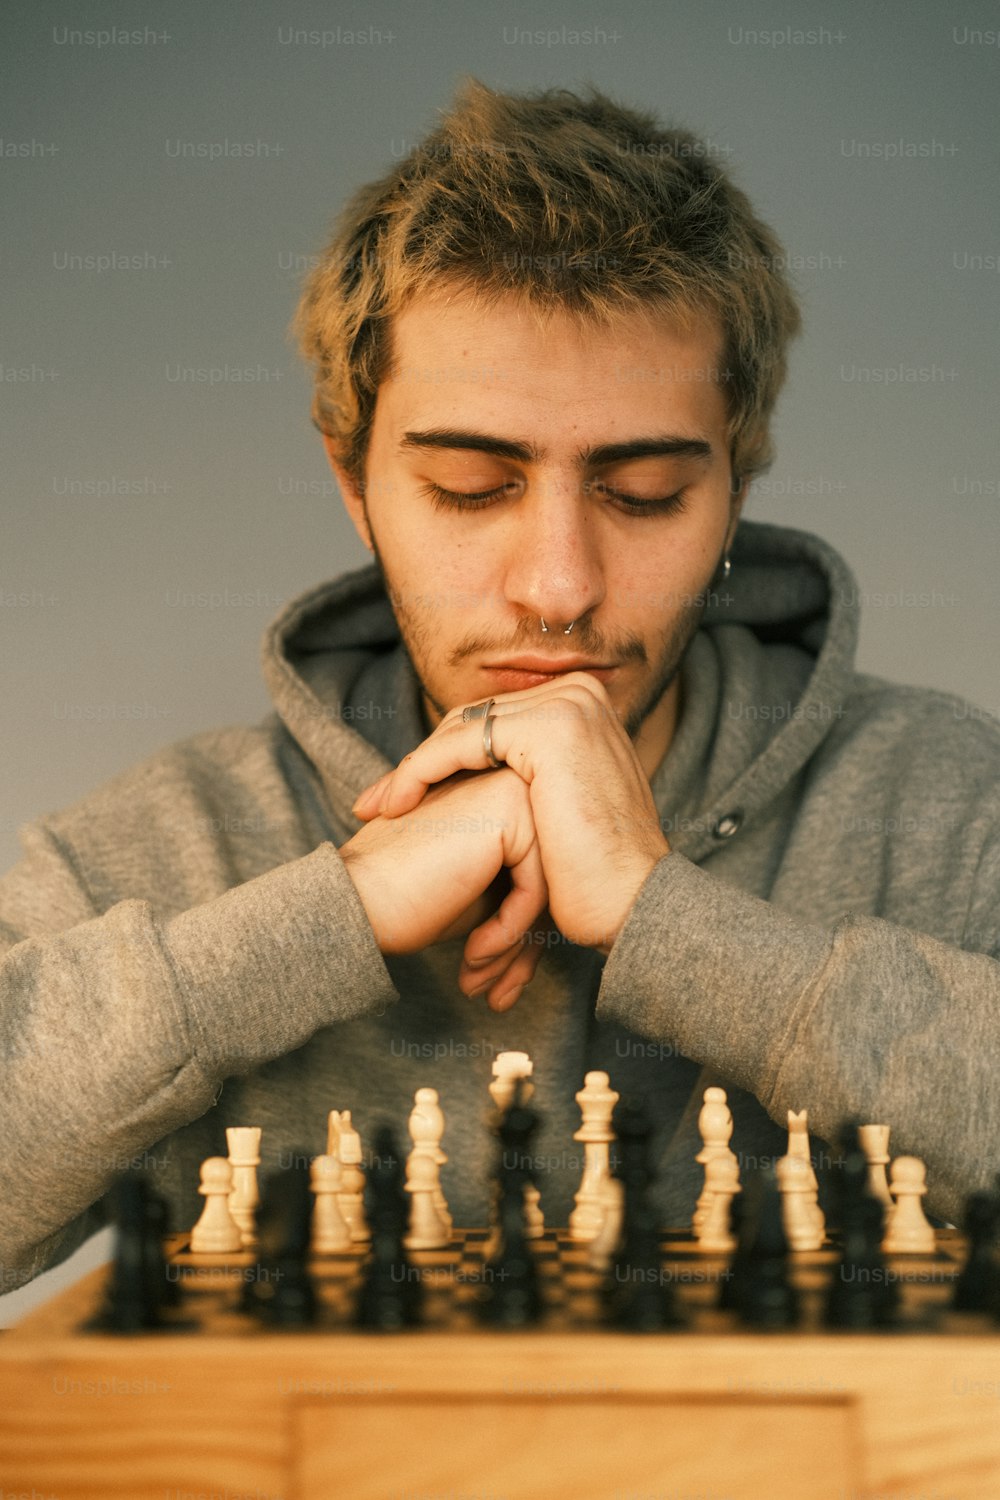 체스 보드가있는 테이블에 앉아있는 남자